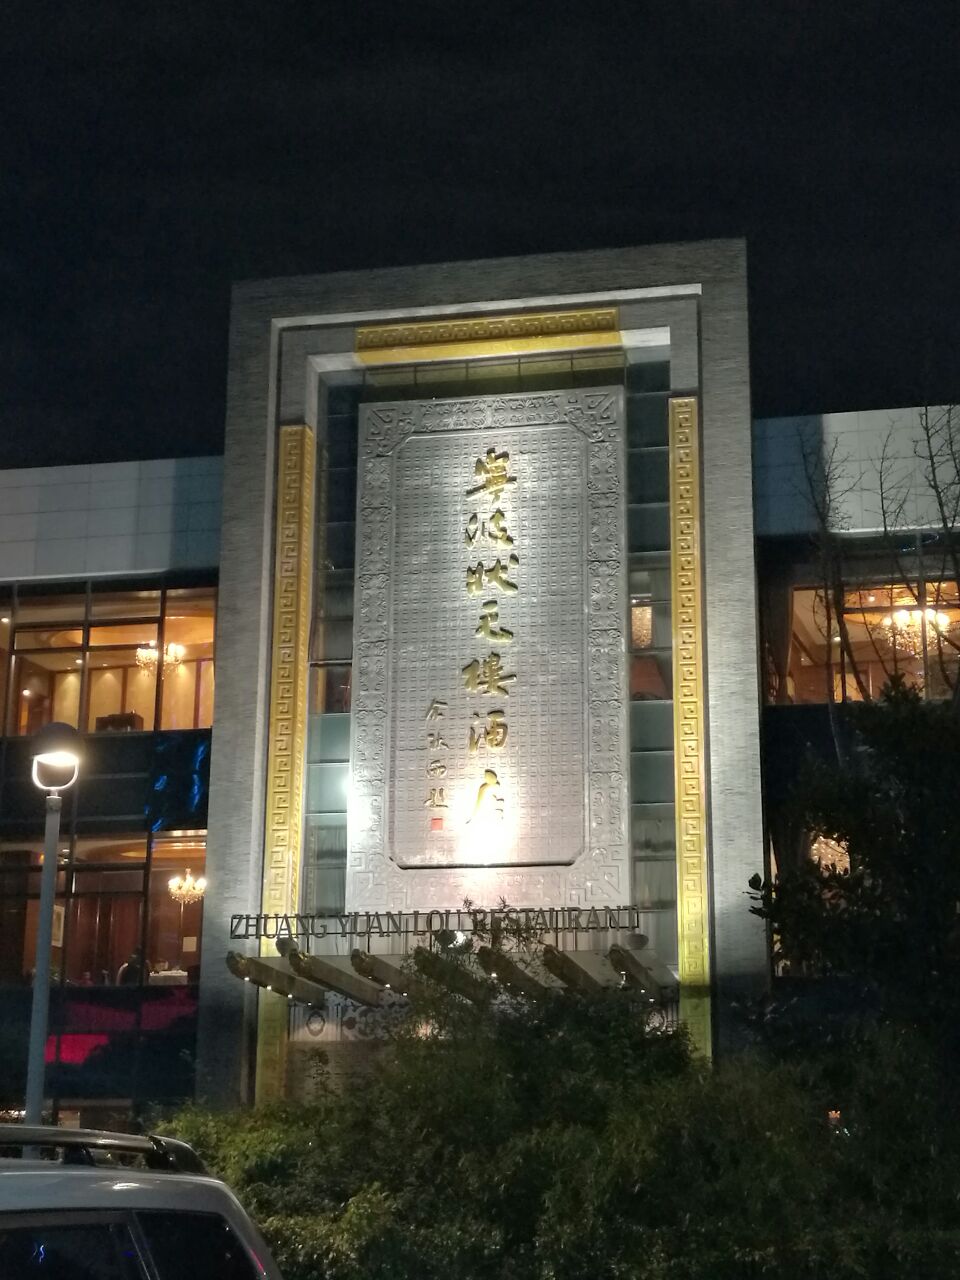 宁波状元楼酒店地址图片